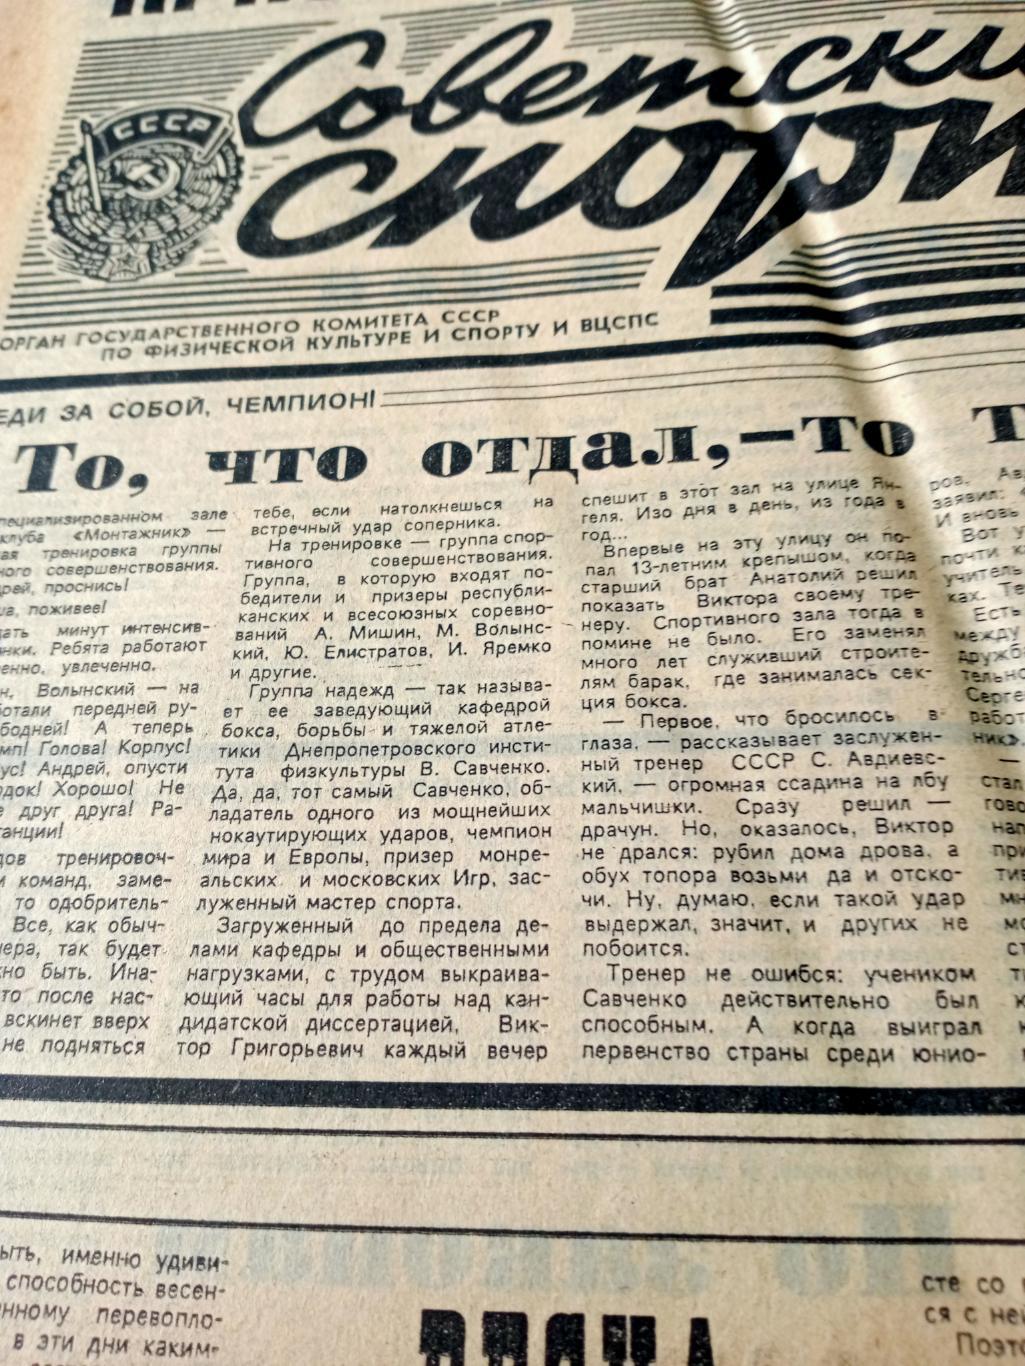 Важные старты. Советский спорт. 1988 год. 16 апреля